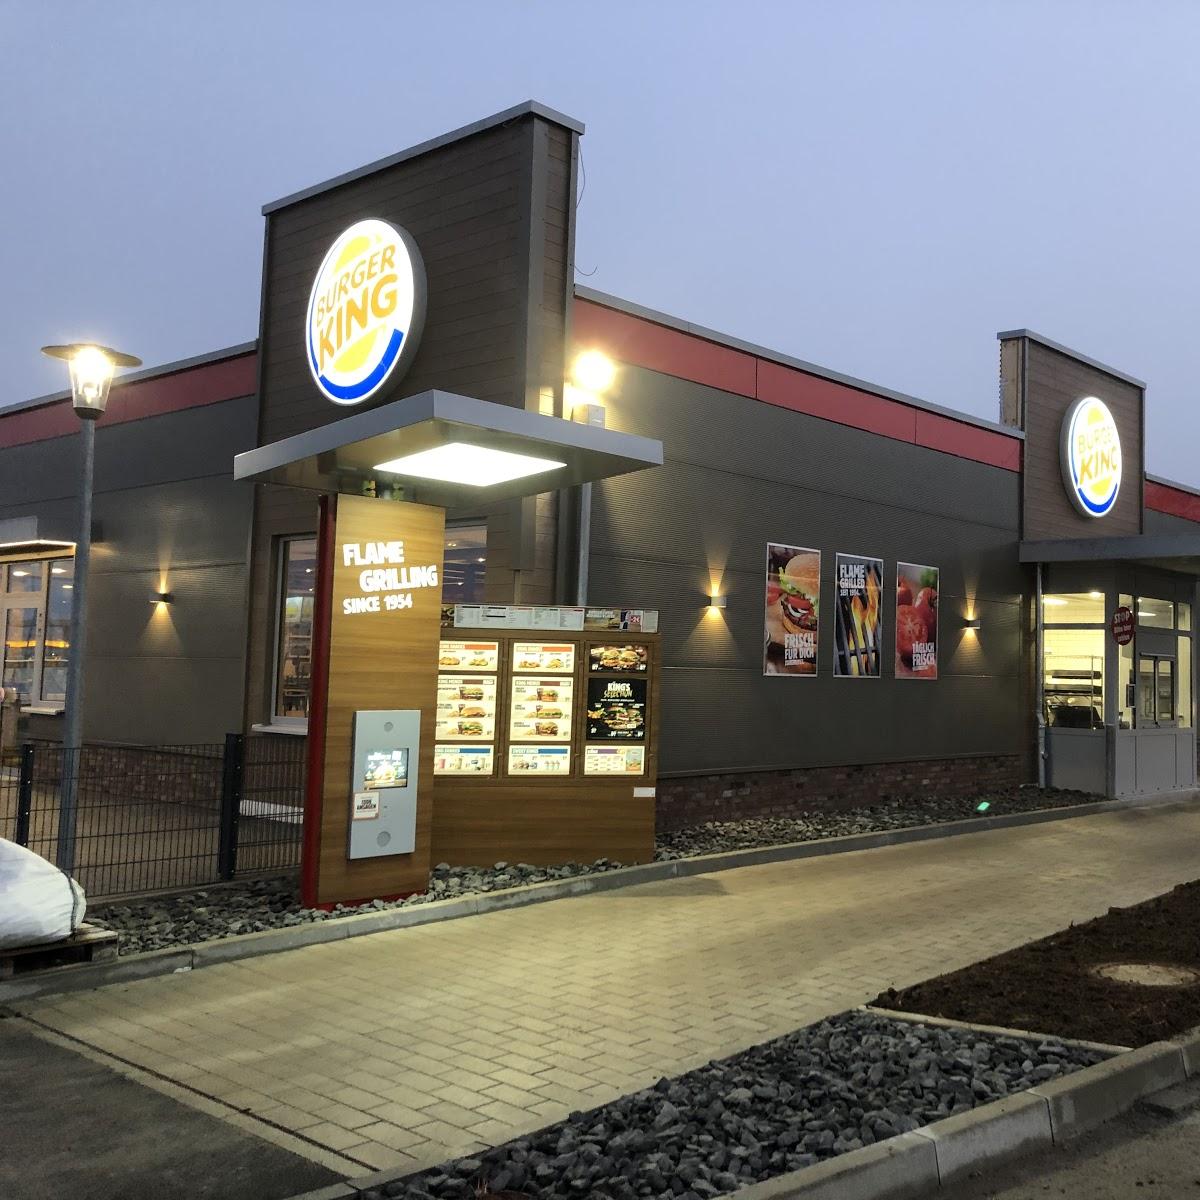 Restaurant "Burger King" in Merklingen